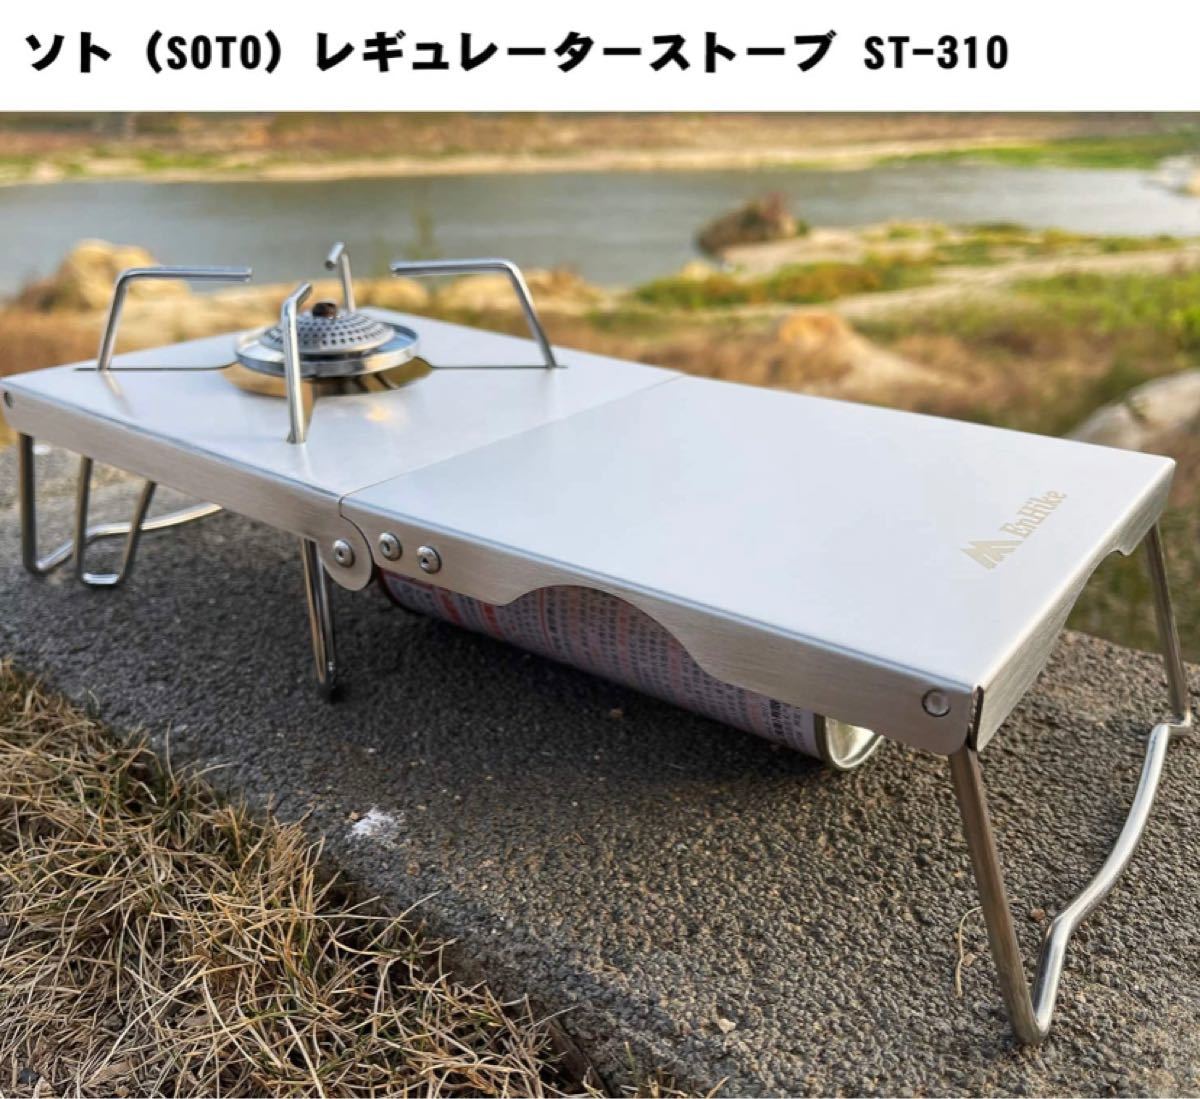 Enhike 遮熱テーブル　遮熱板　各種シングルバーナー向け　st310 st330 iwatani soto